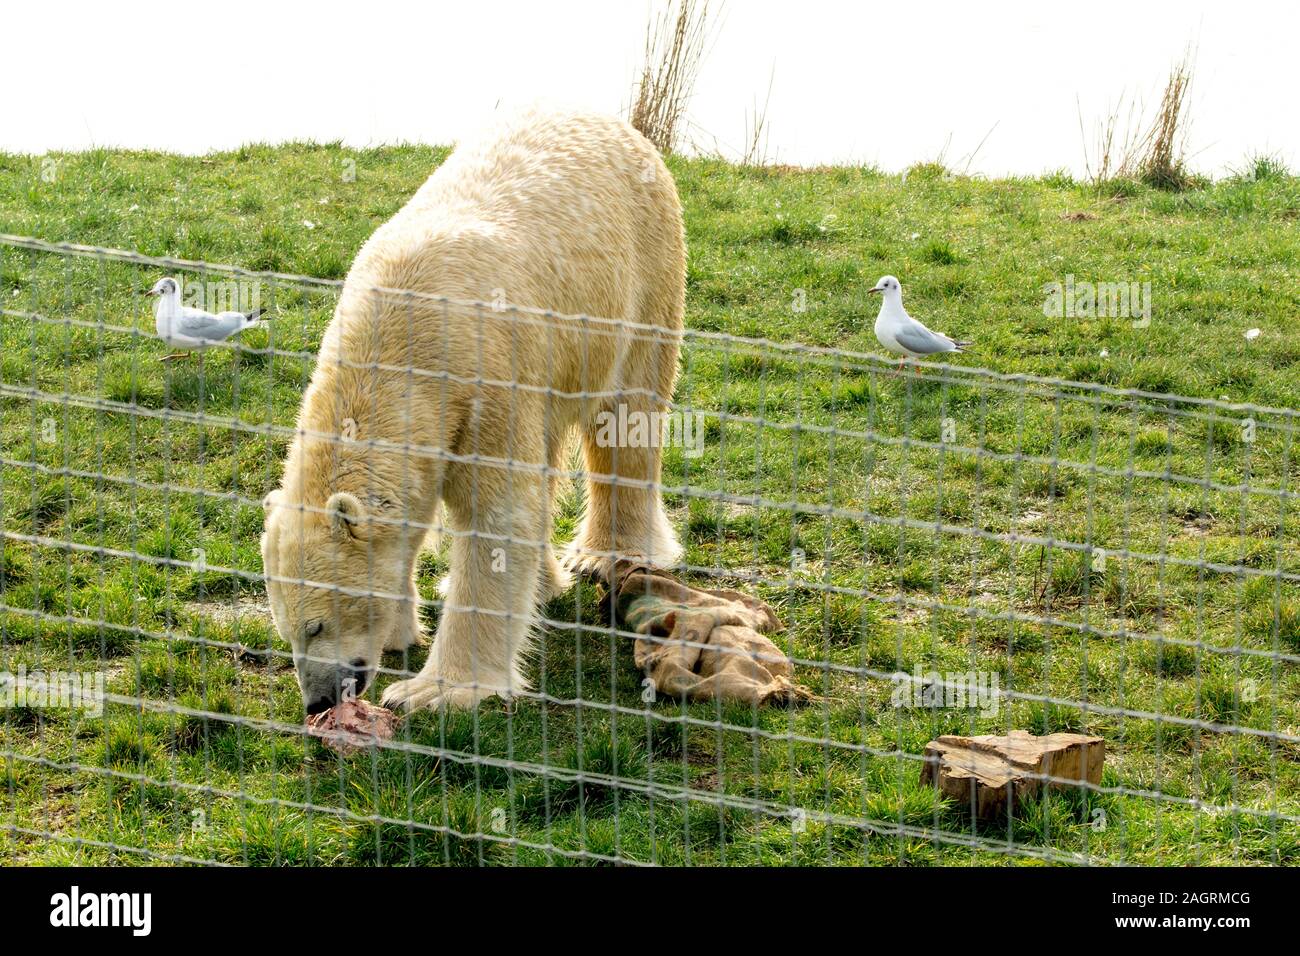 A huge and friendly looking Polar Bear, at a UK Zoo enclosure. Stock Photo